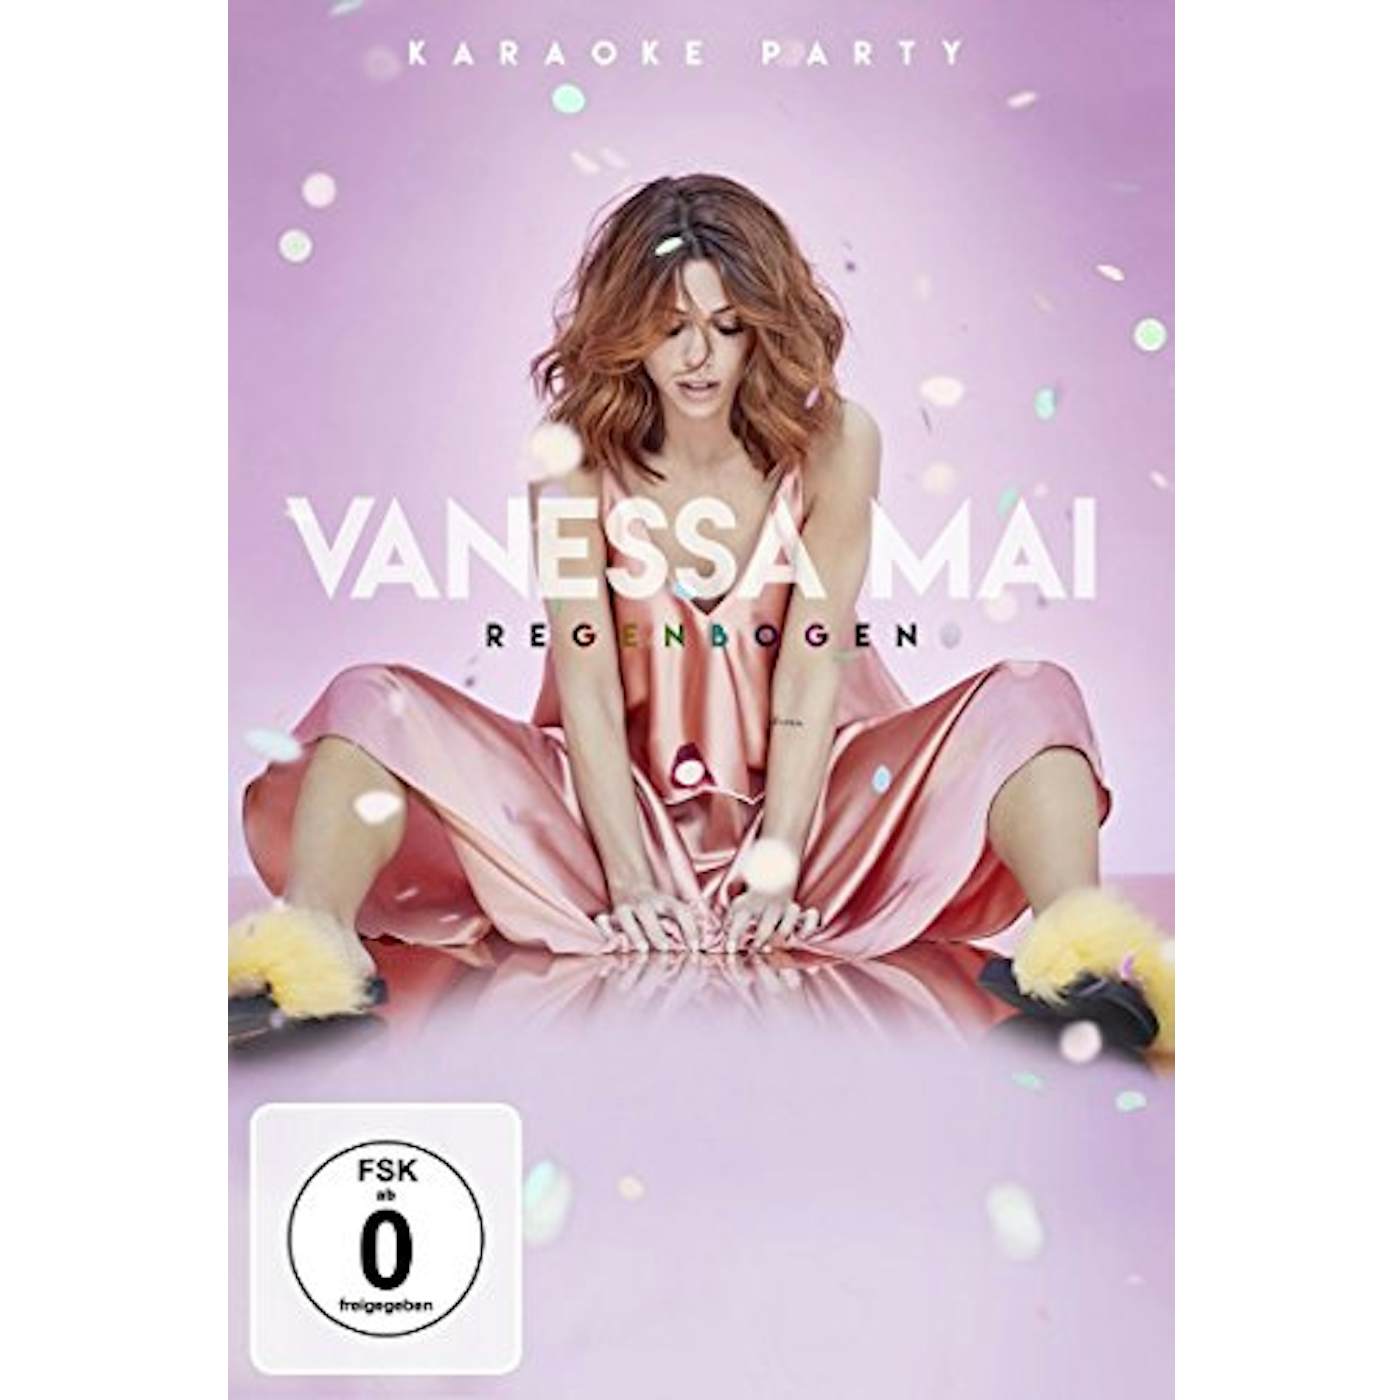 Vanessa Mai REGENBOGEN DVD